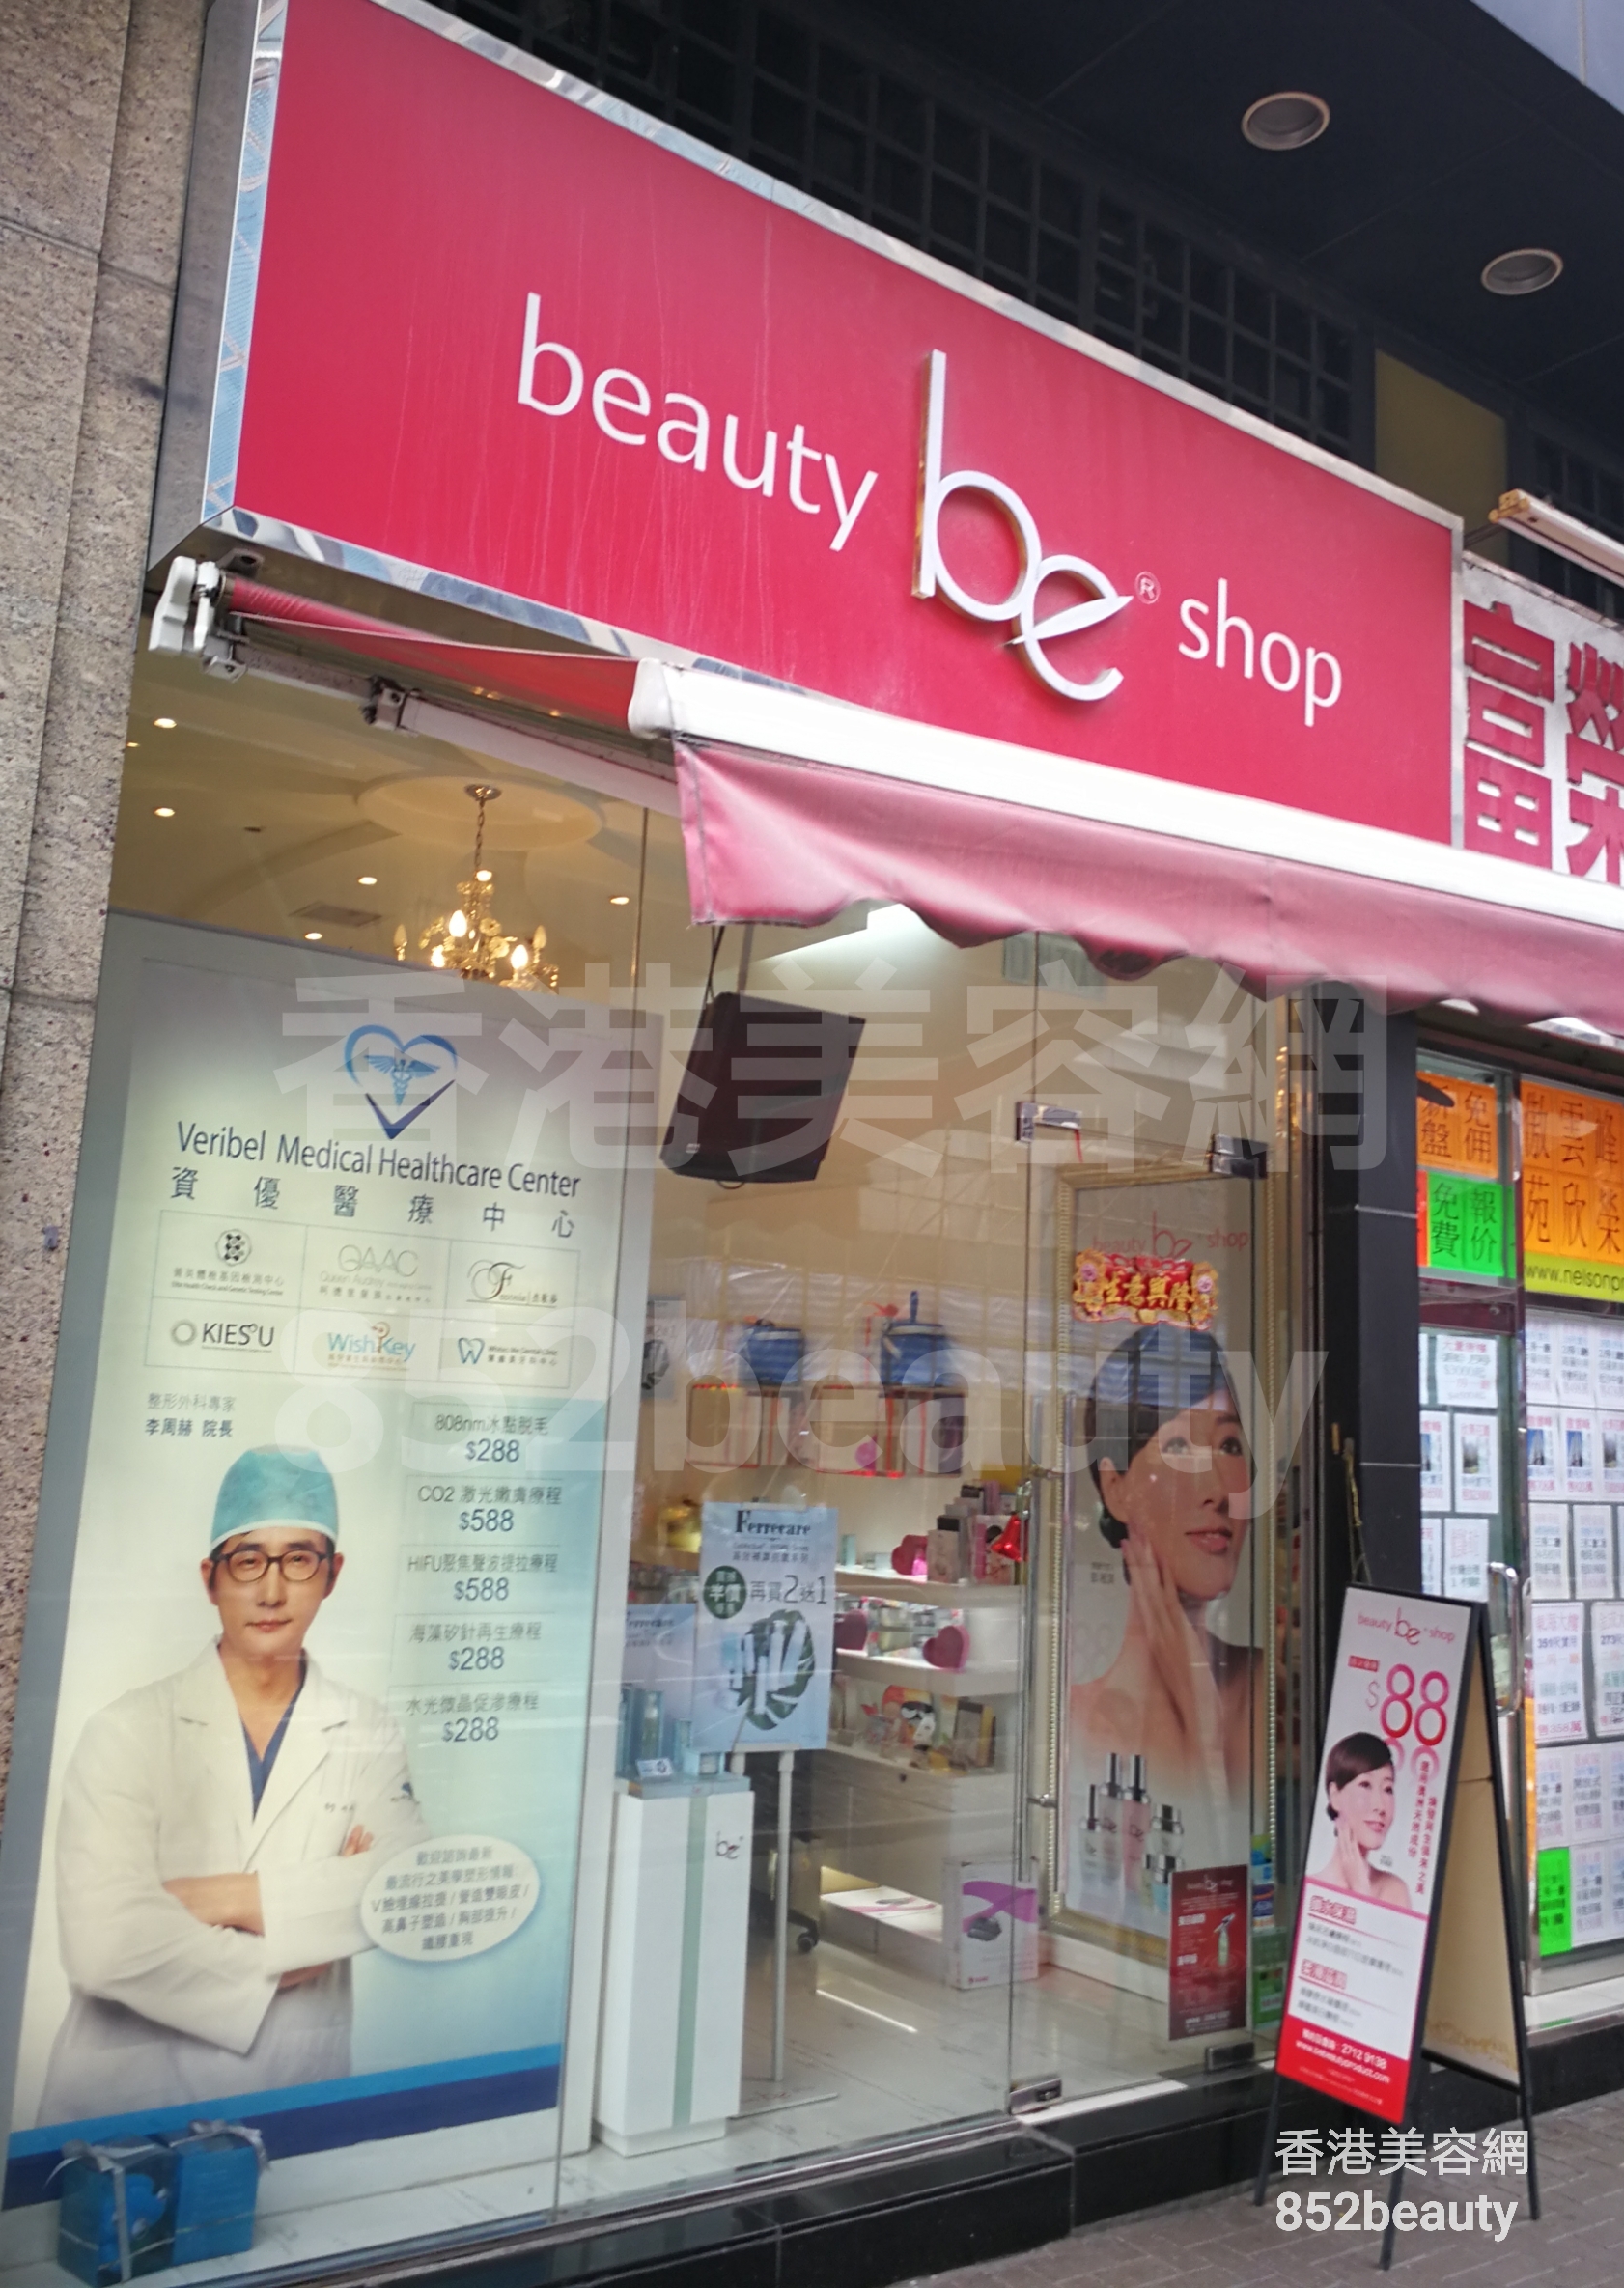 香港美容網 Hong Kong Beauty Salon 美容院 / 美容師: be beauty shop (金都豪庭)